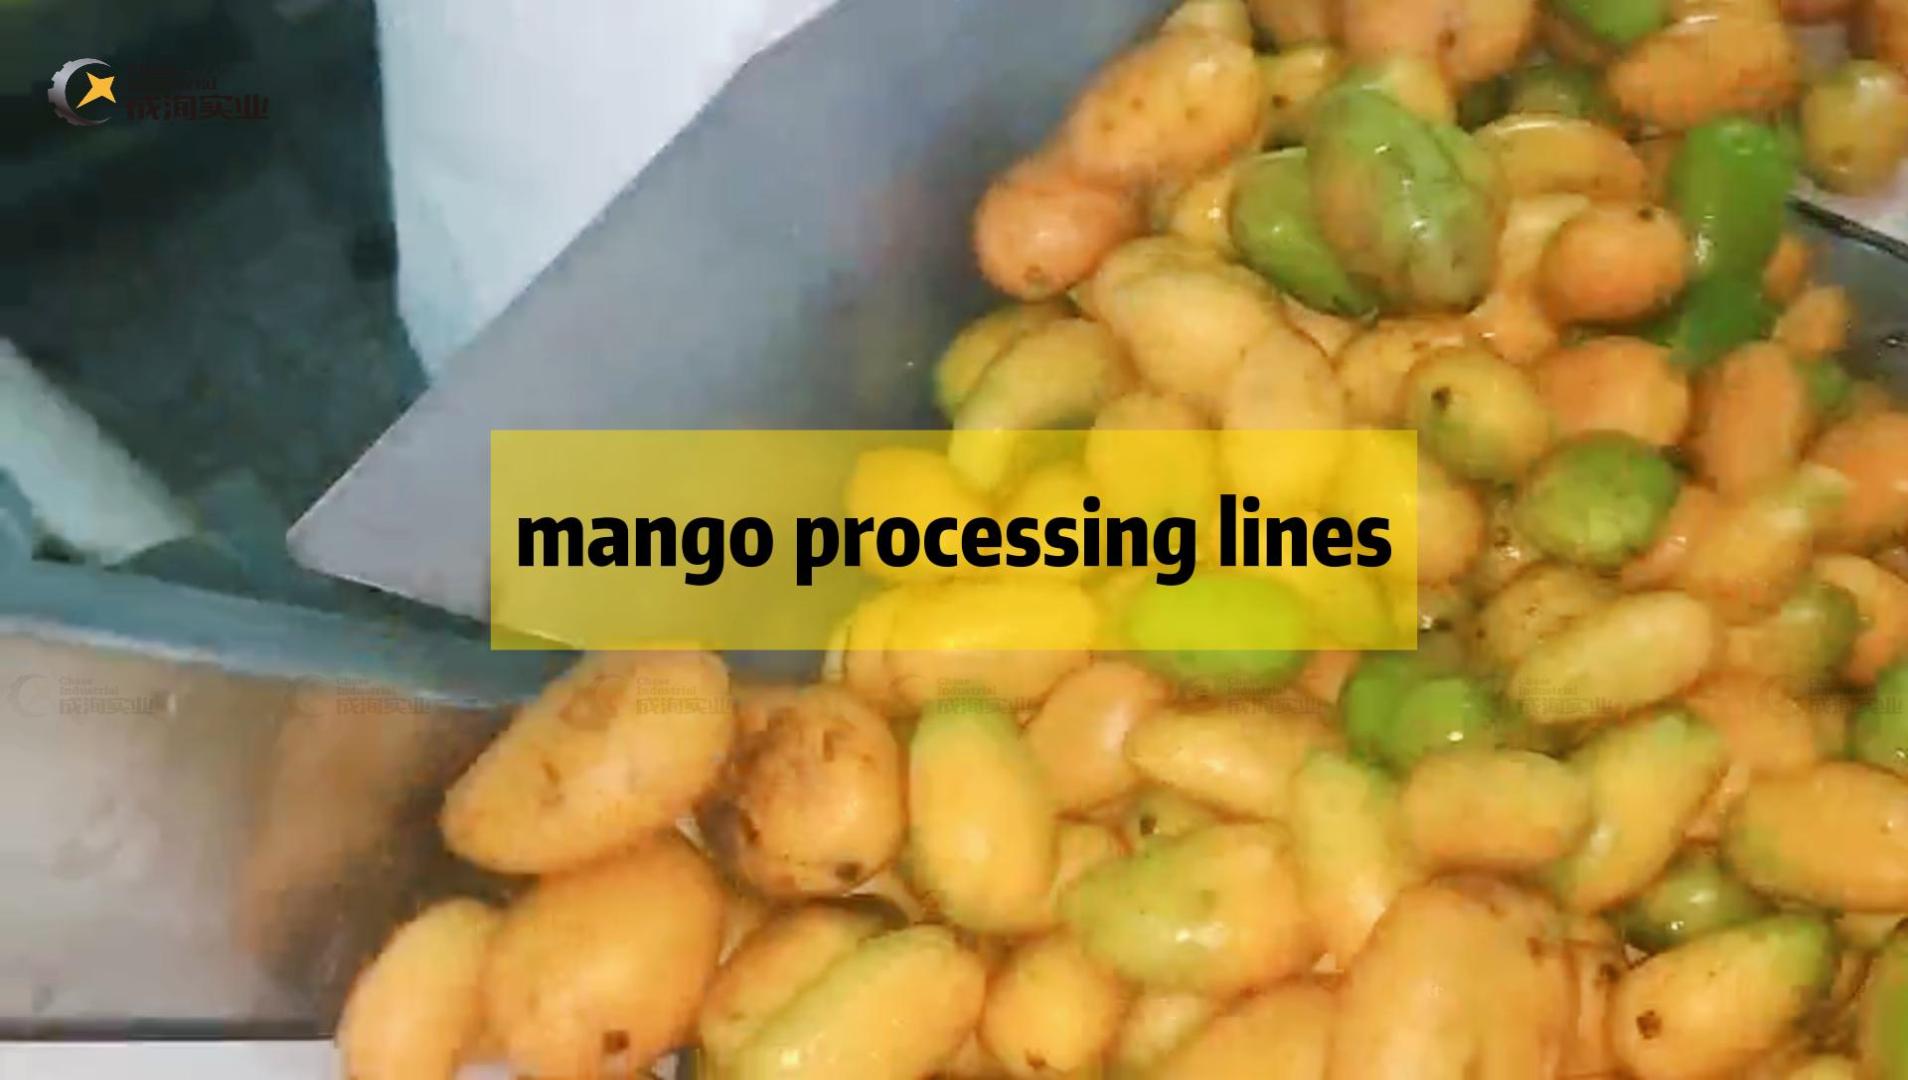 Mango-Fruchtfleisch-Produktionslinie